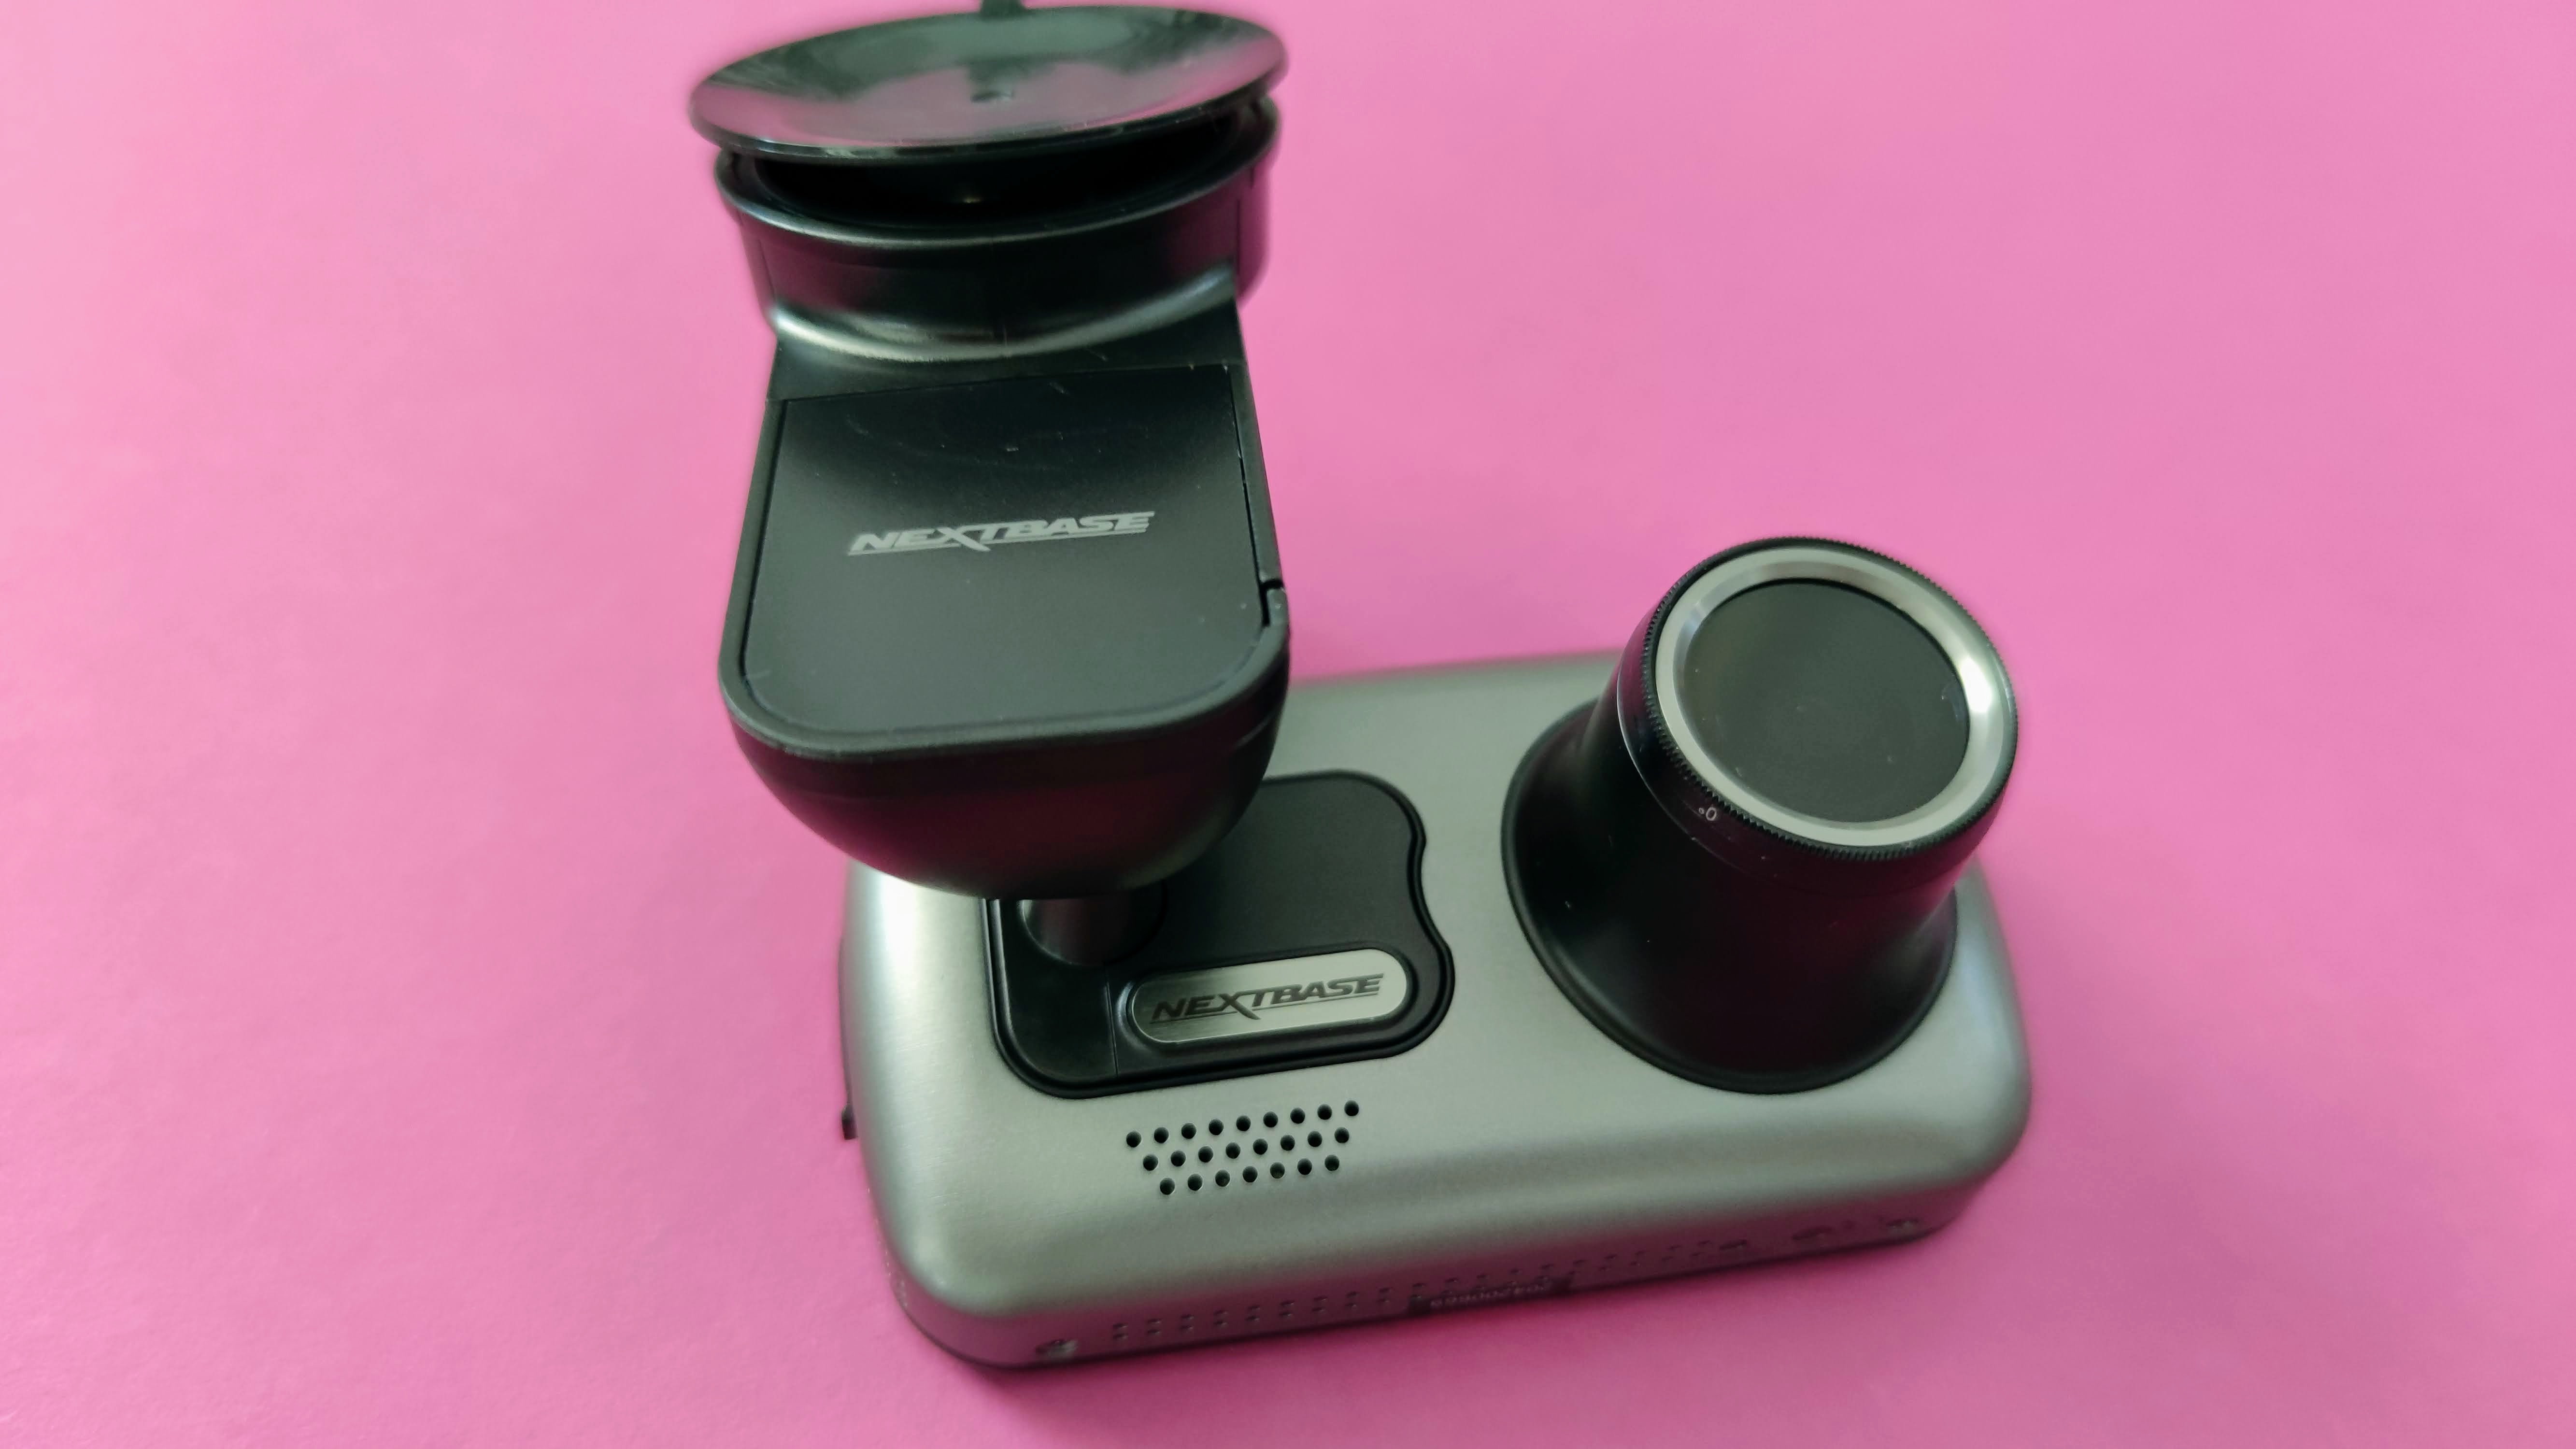 Tipps zur Montage bei Autokameras und Dashcams